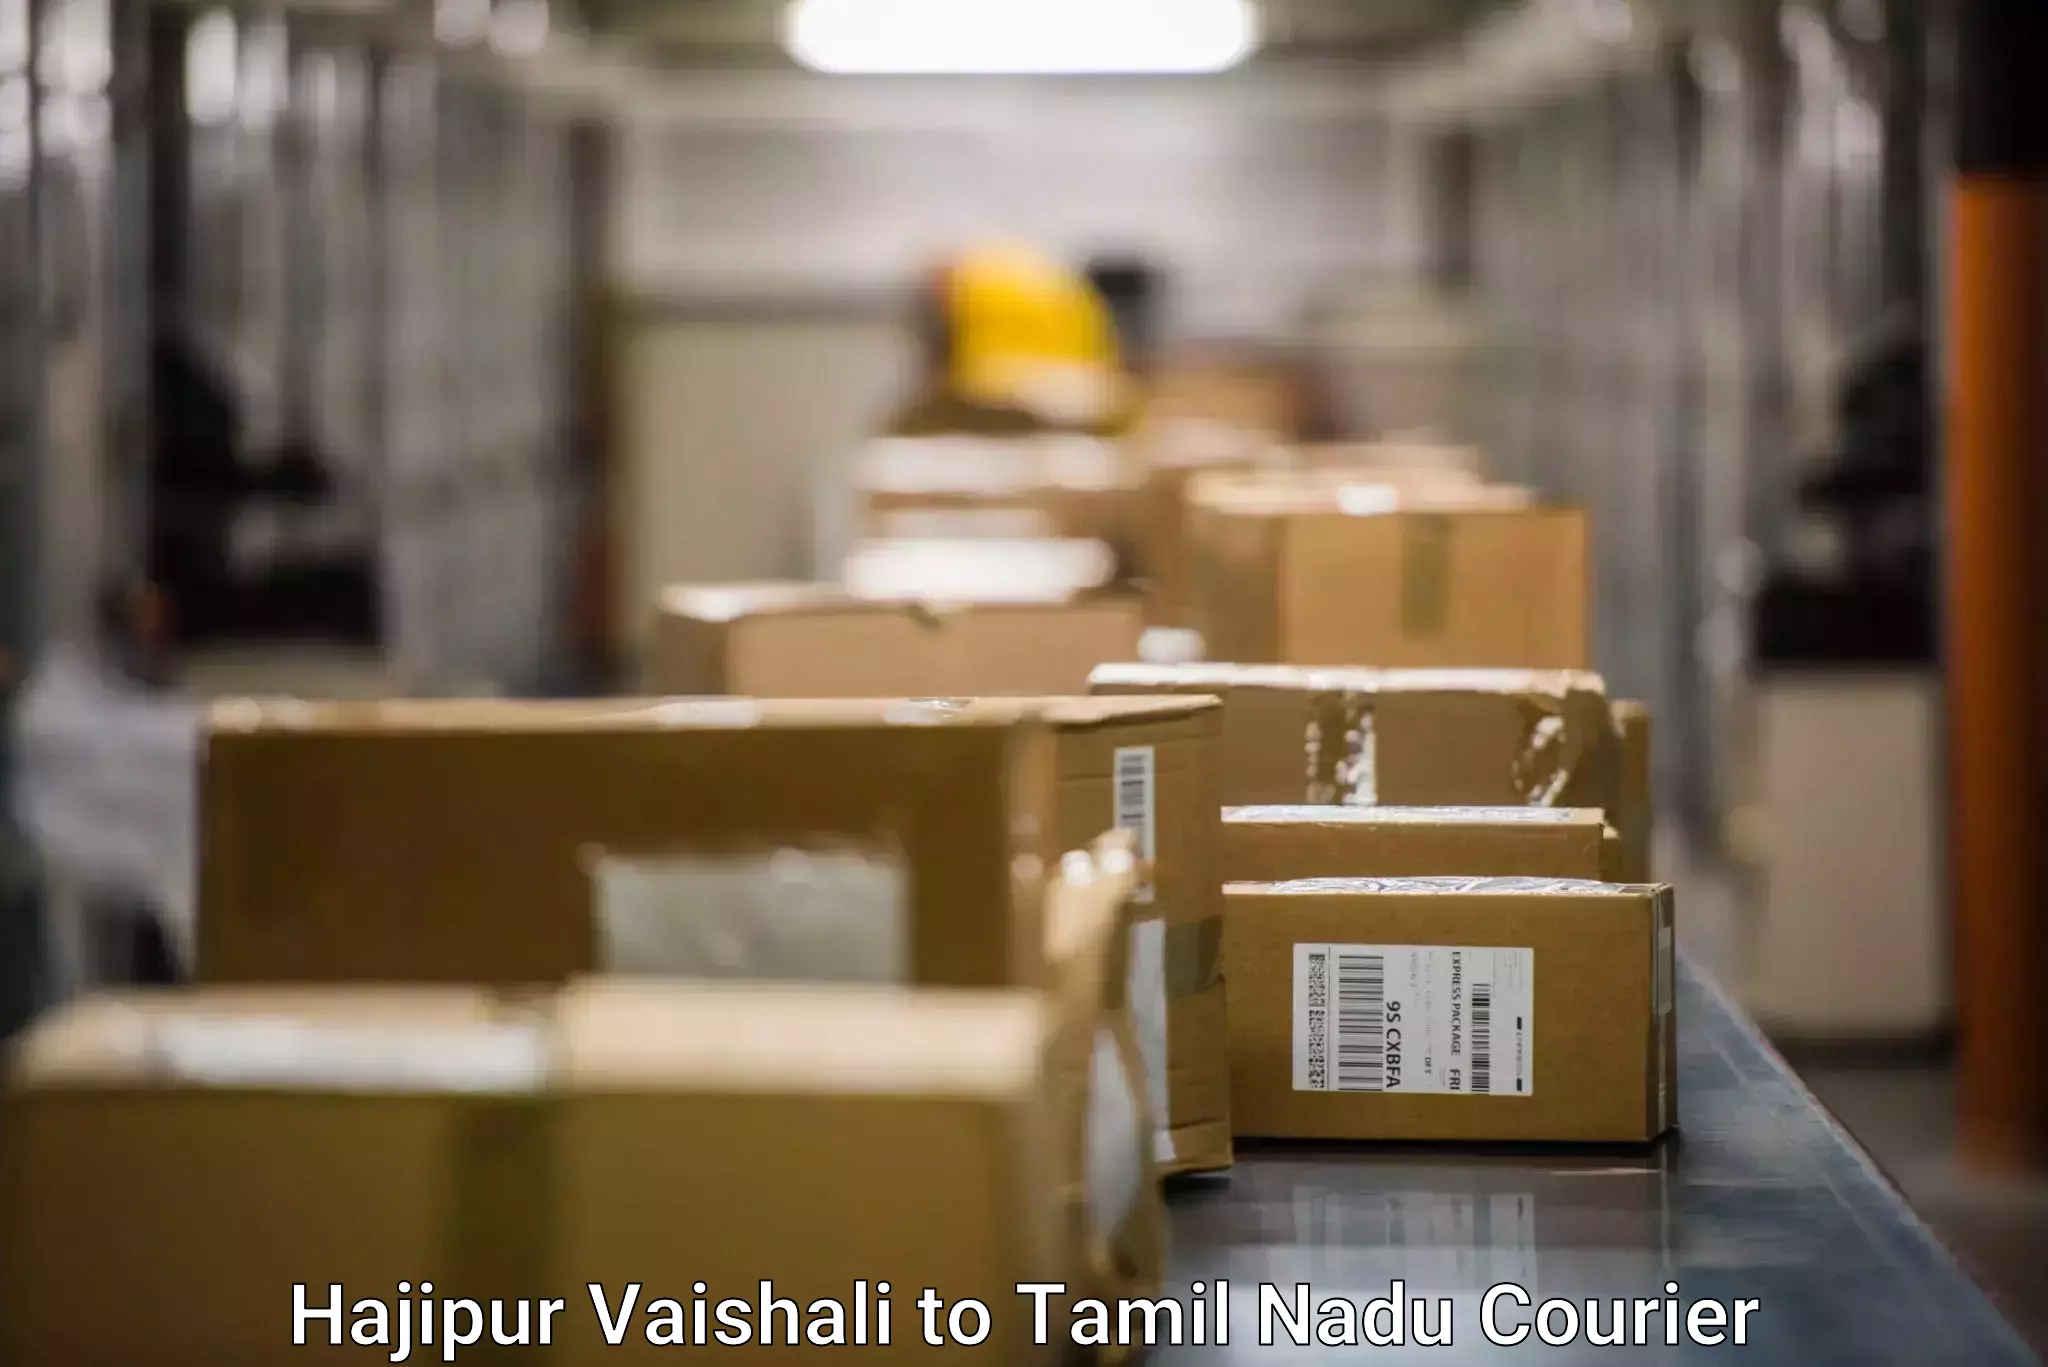 Urgent courier needs Hajipur Vaishali to Chennai